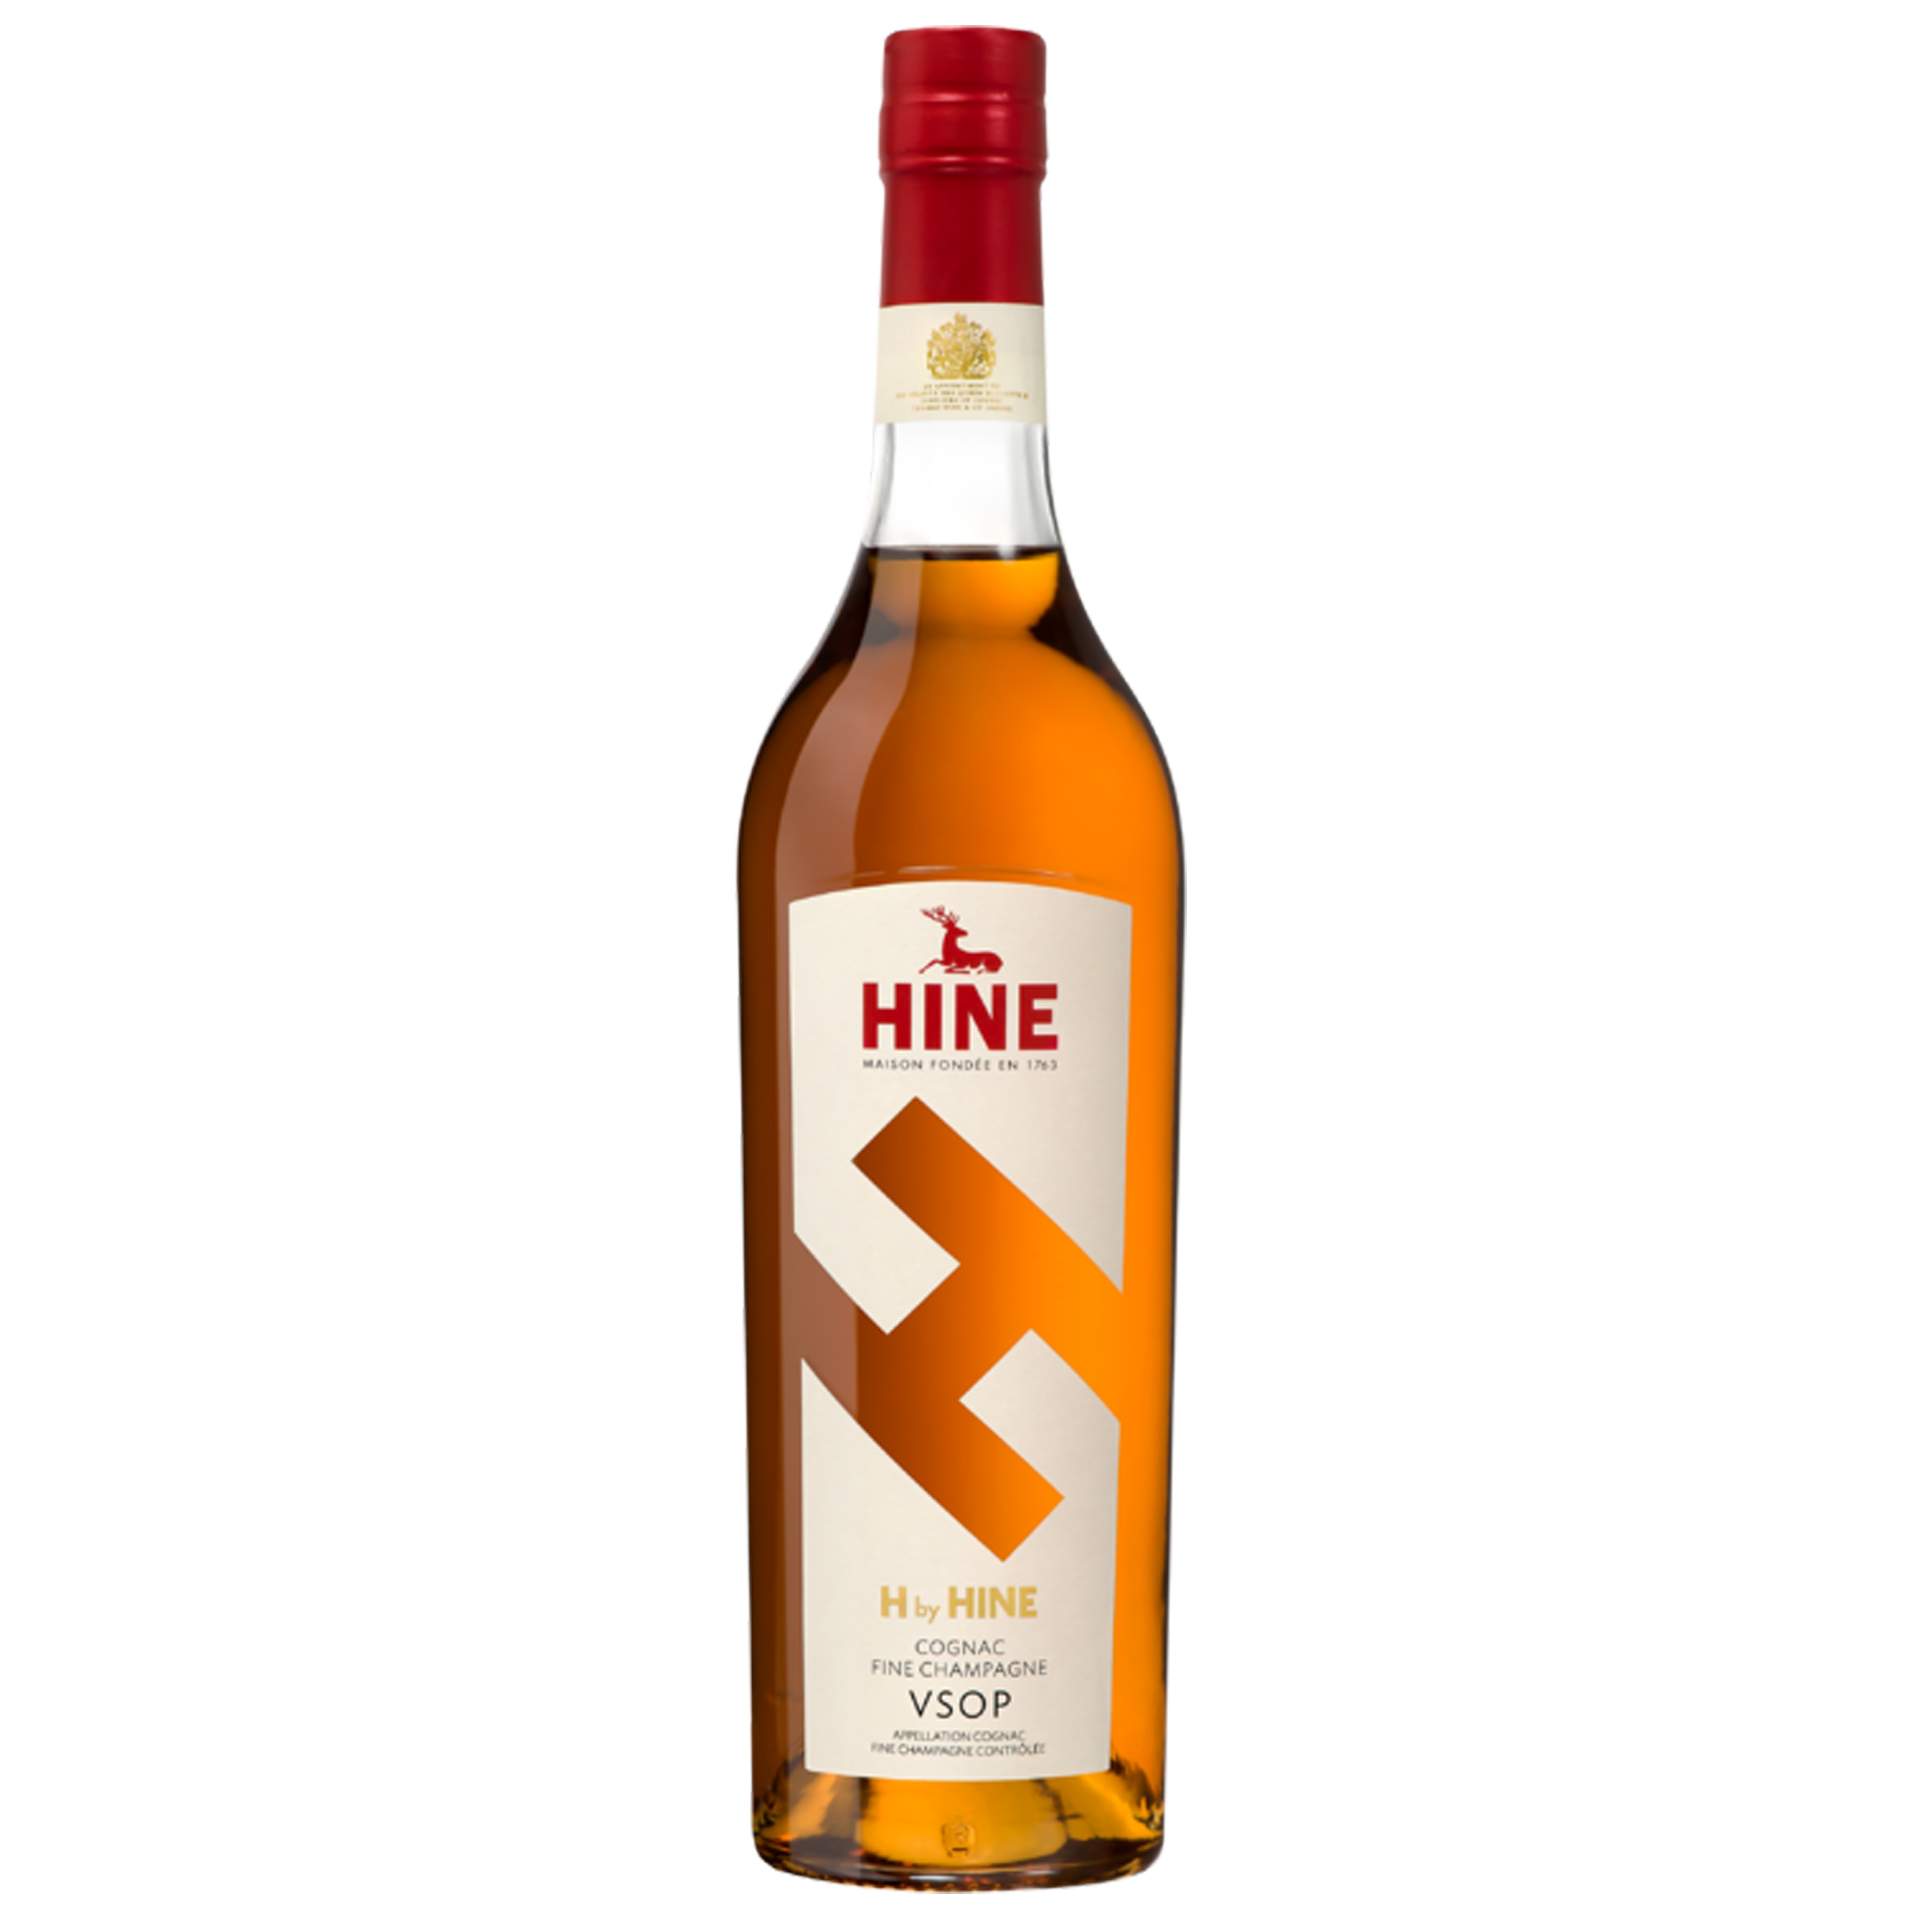 H by Hine Cognac VSOP